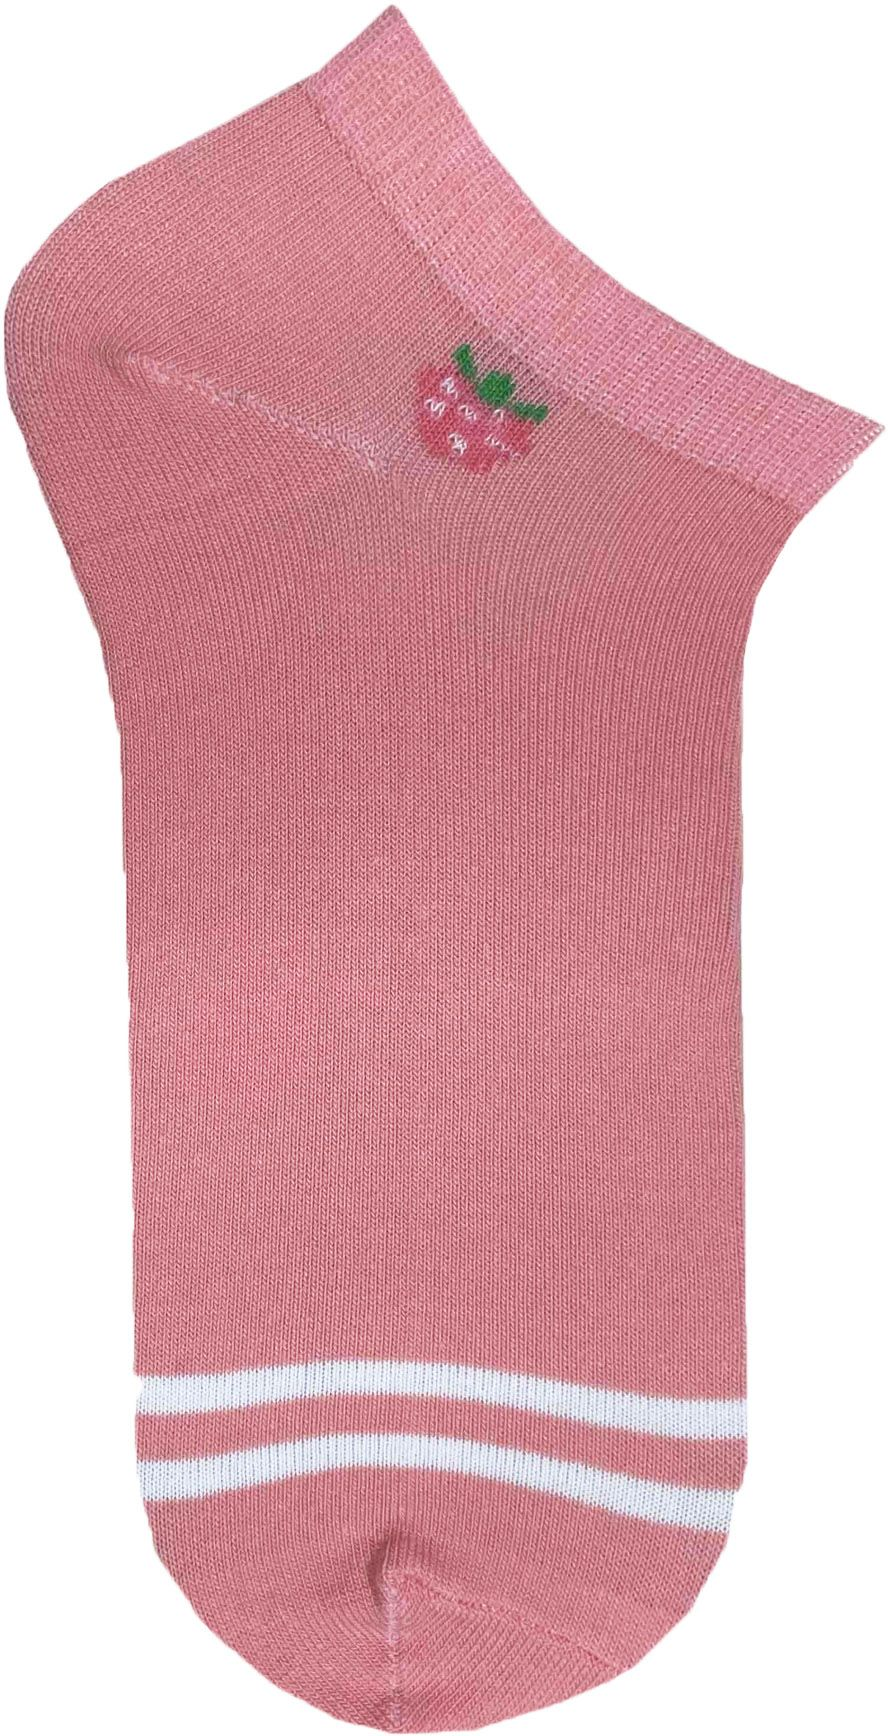 Набор носков женских Premier Socks 36-40 5 пар розовые с принтом (4820163319360) фото 2